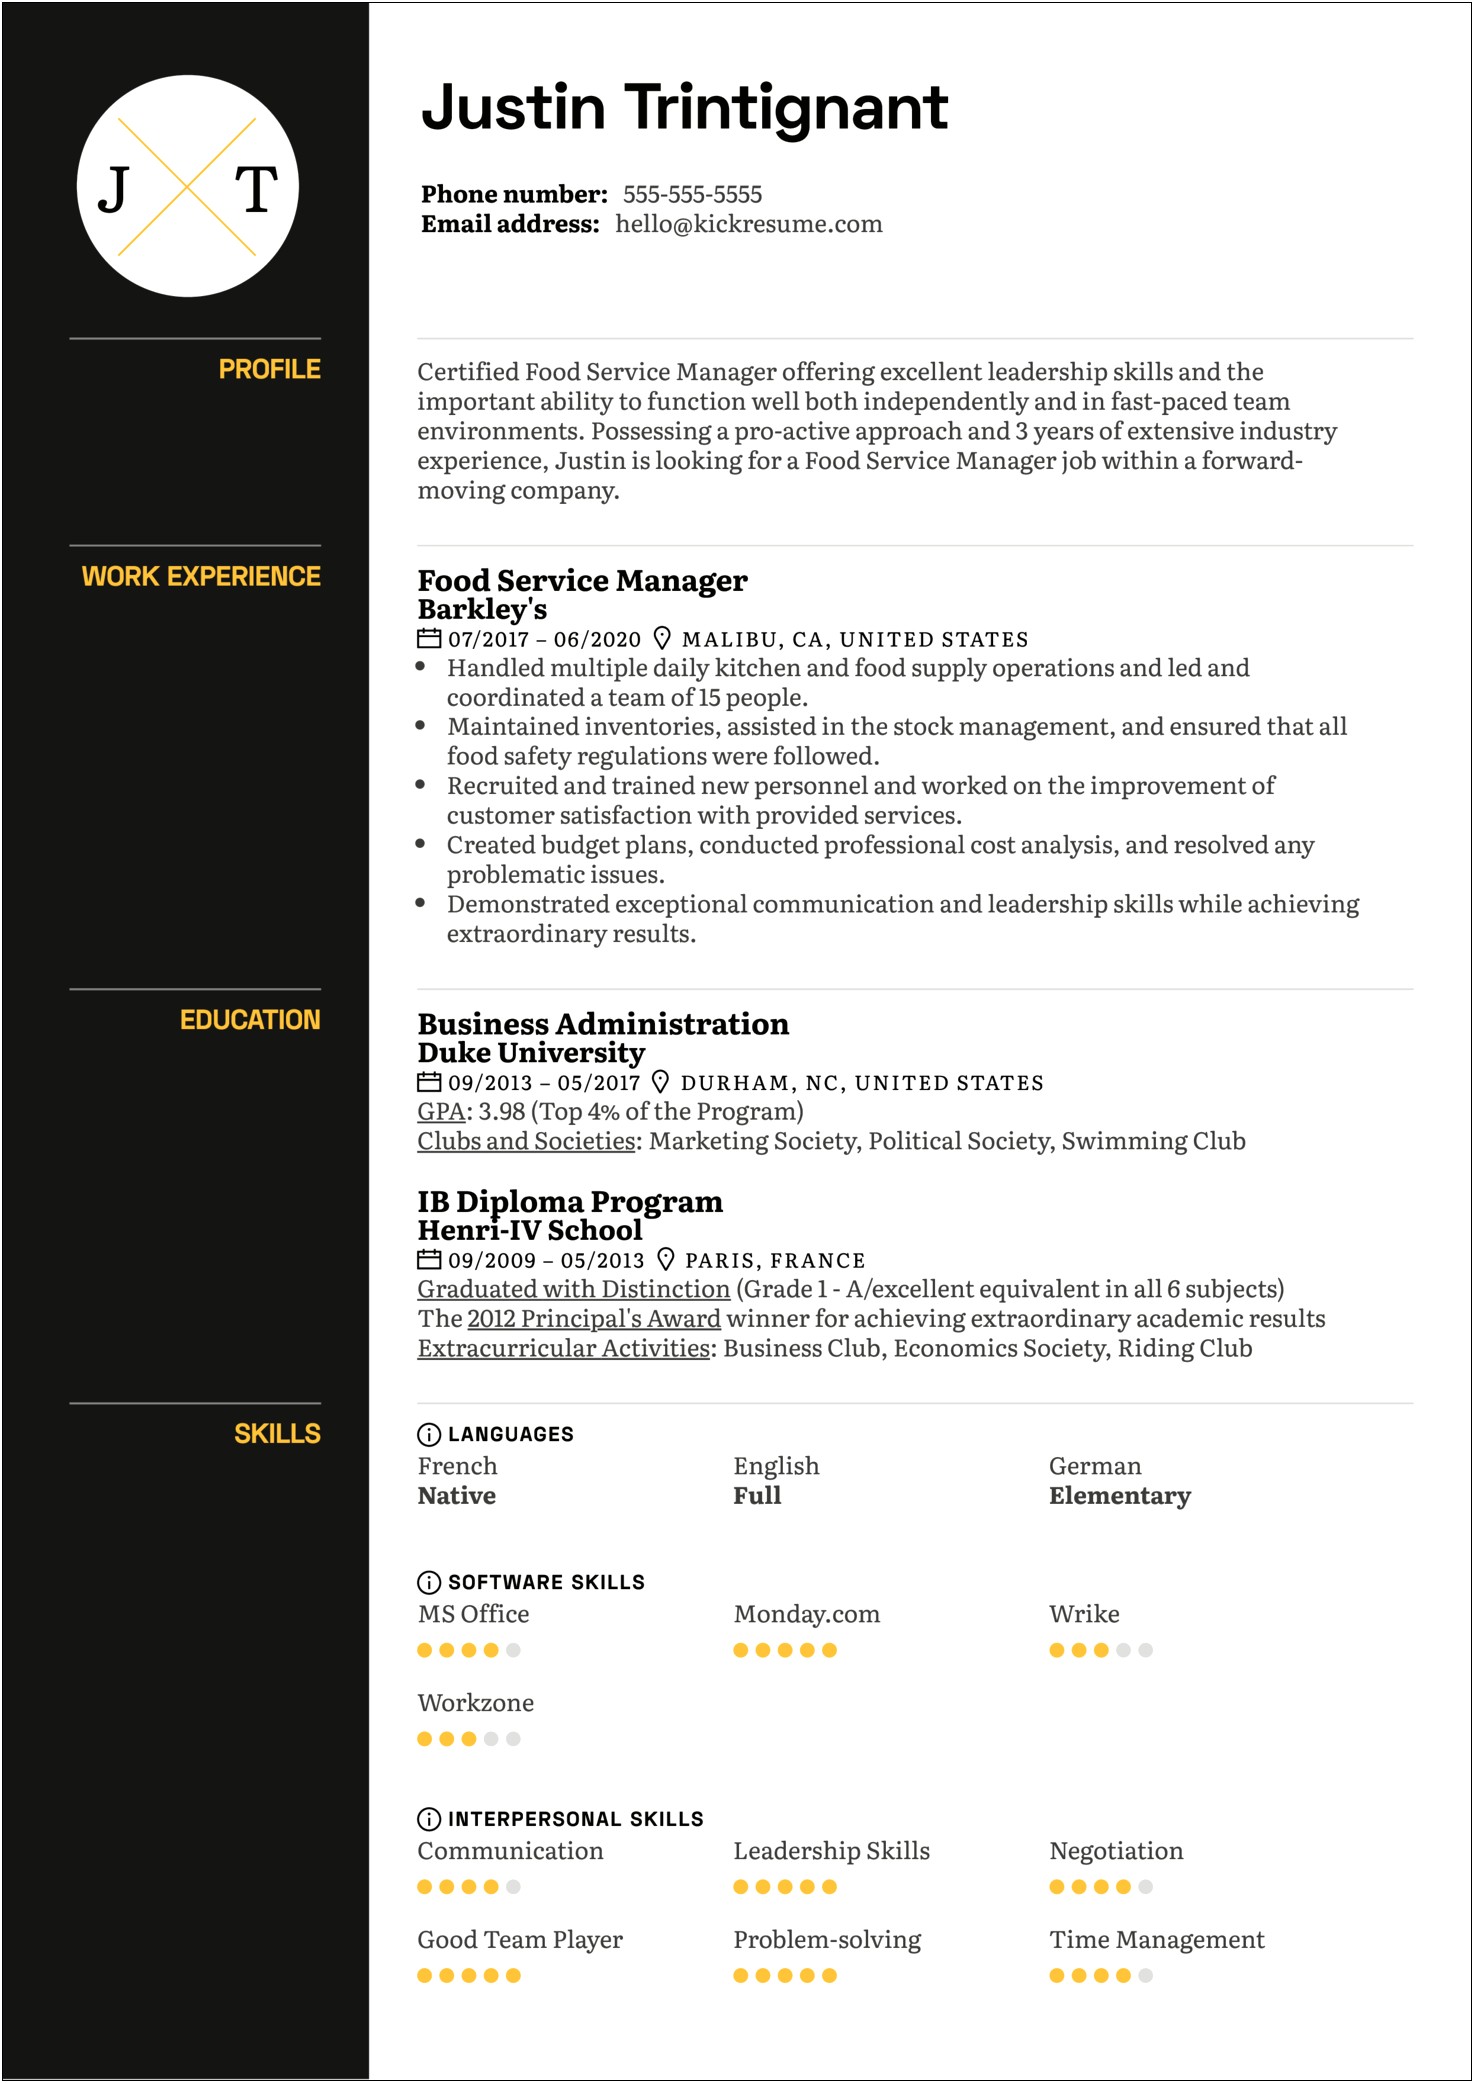 Fast Food Manager Job Description Resume